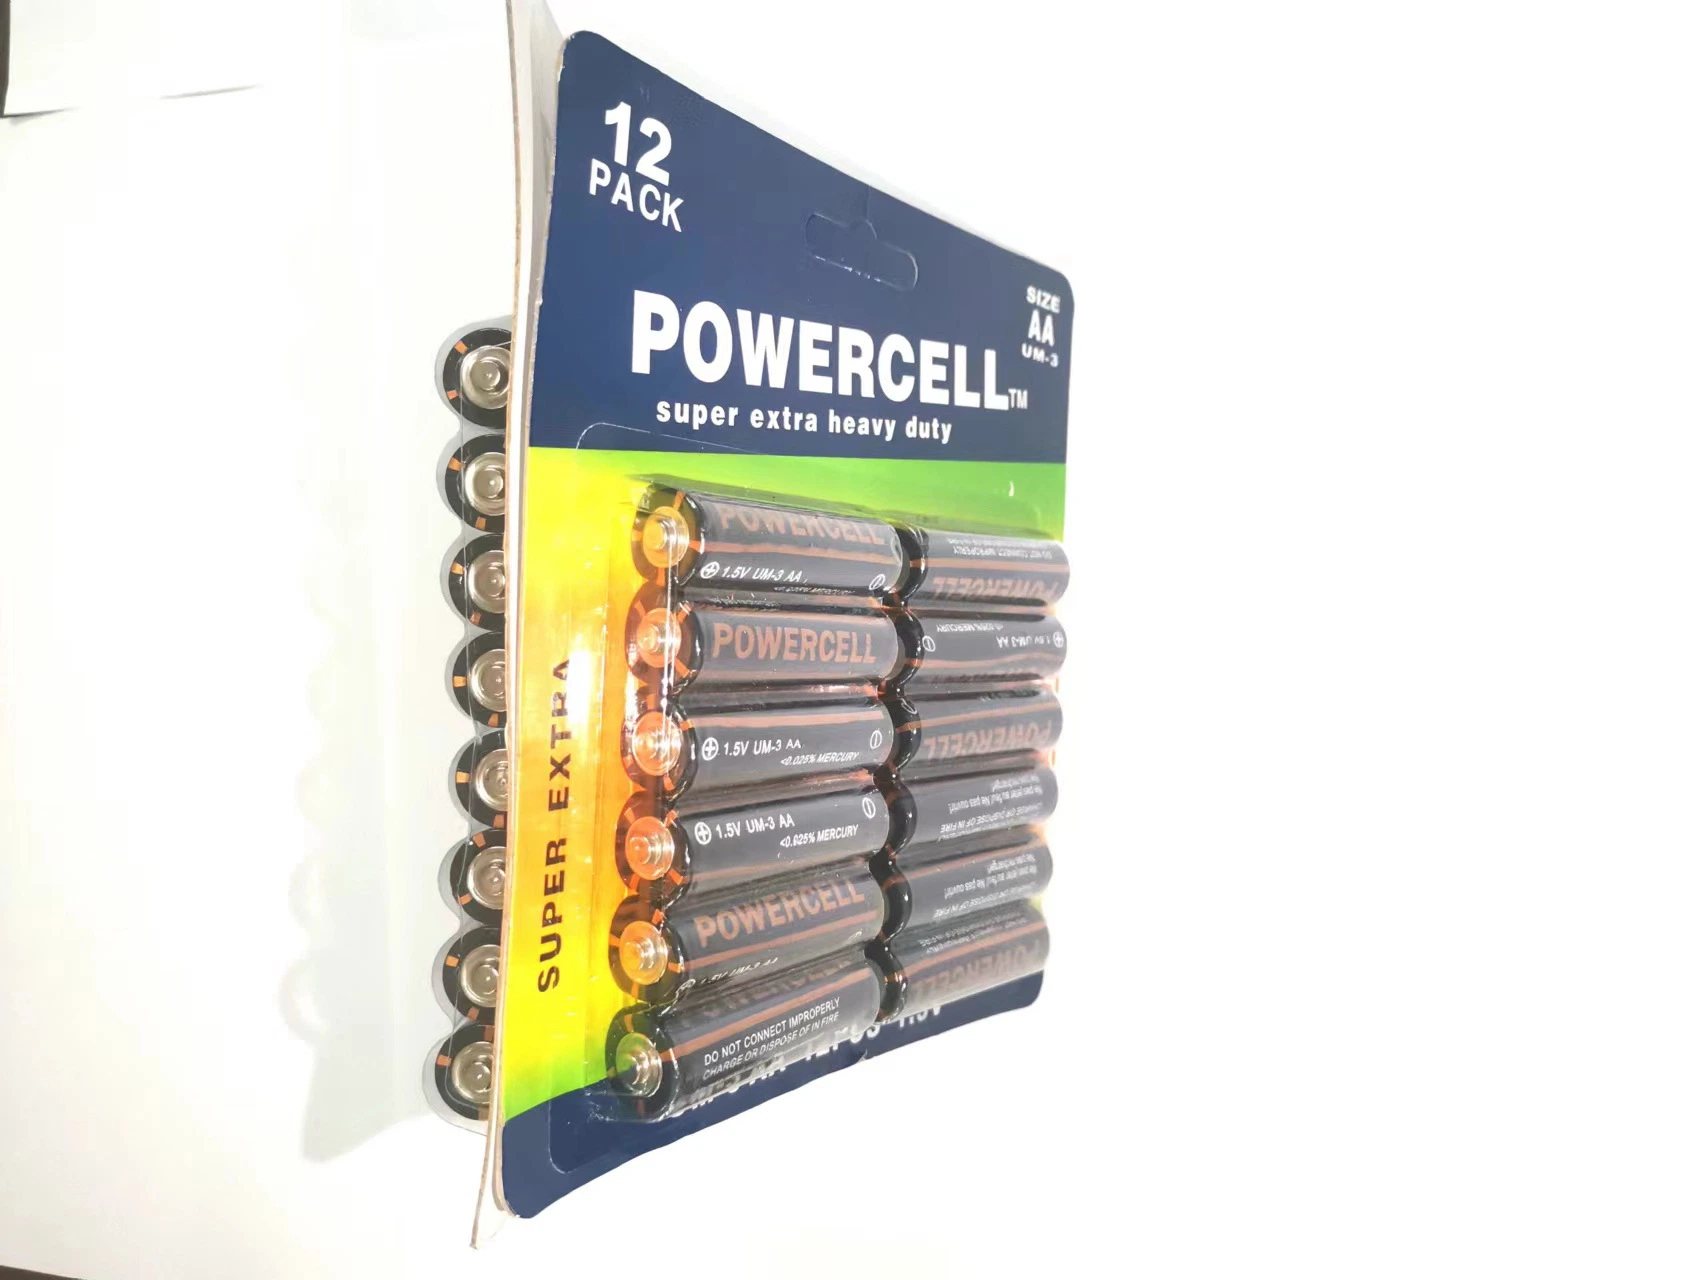 Super haute capacité Powercell AA R6 UM-3 1,5V Carbone-zinc Batterie pile sèche carbone de la batterie principale des cellules de batterie batterie pour Consumer Electronics/ Cont à distance